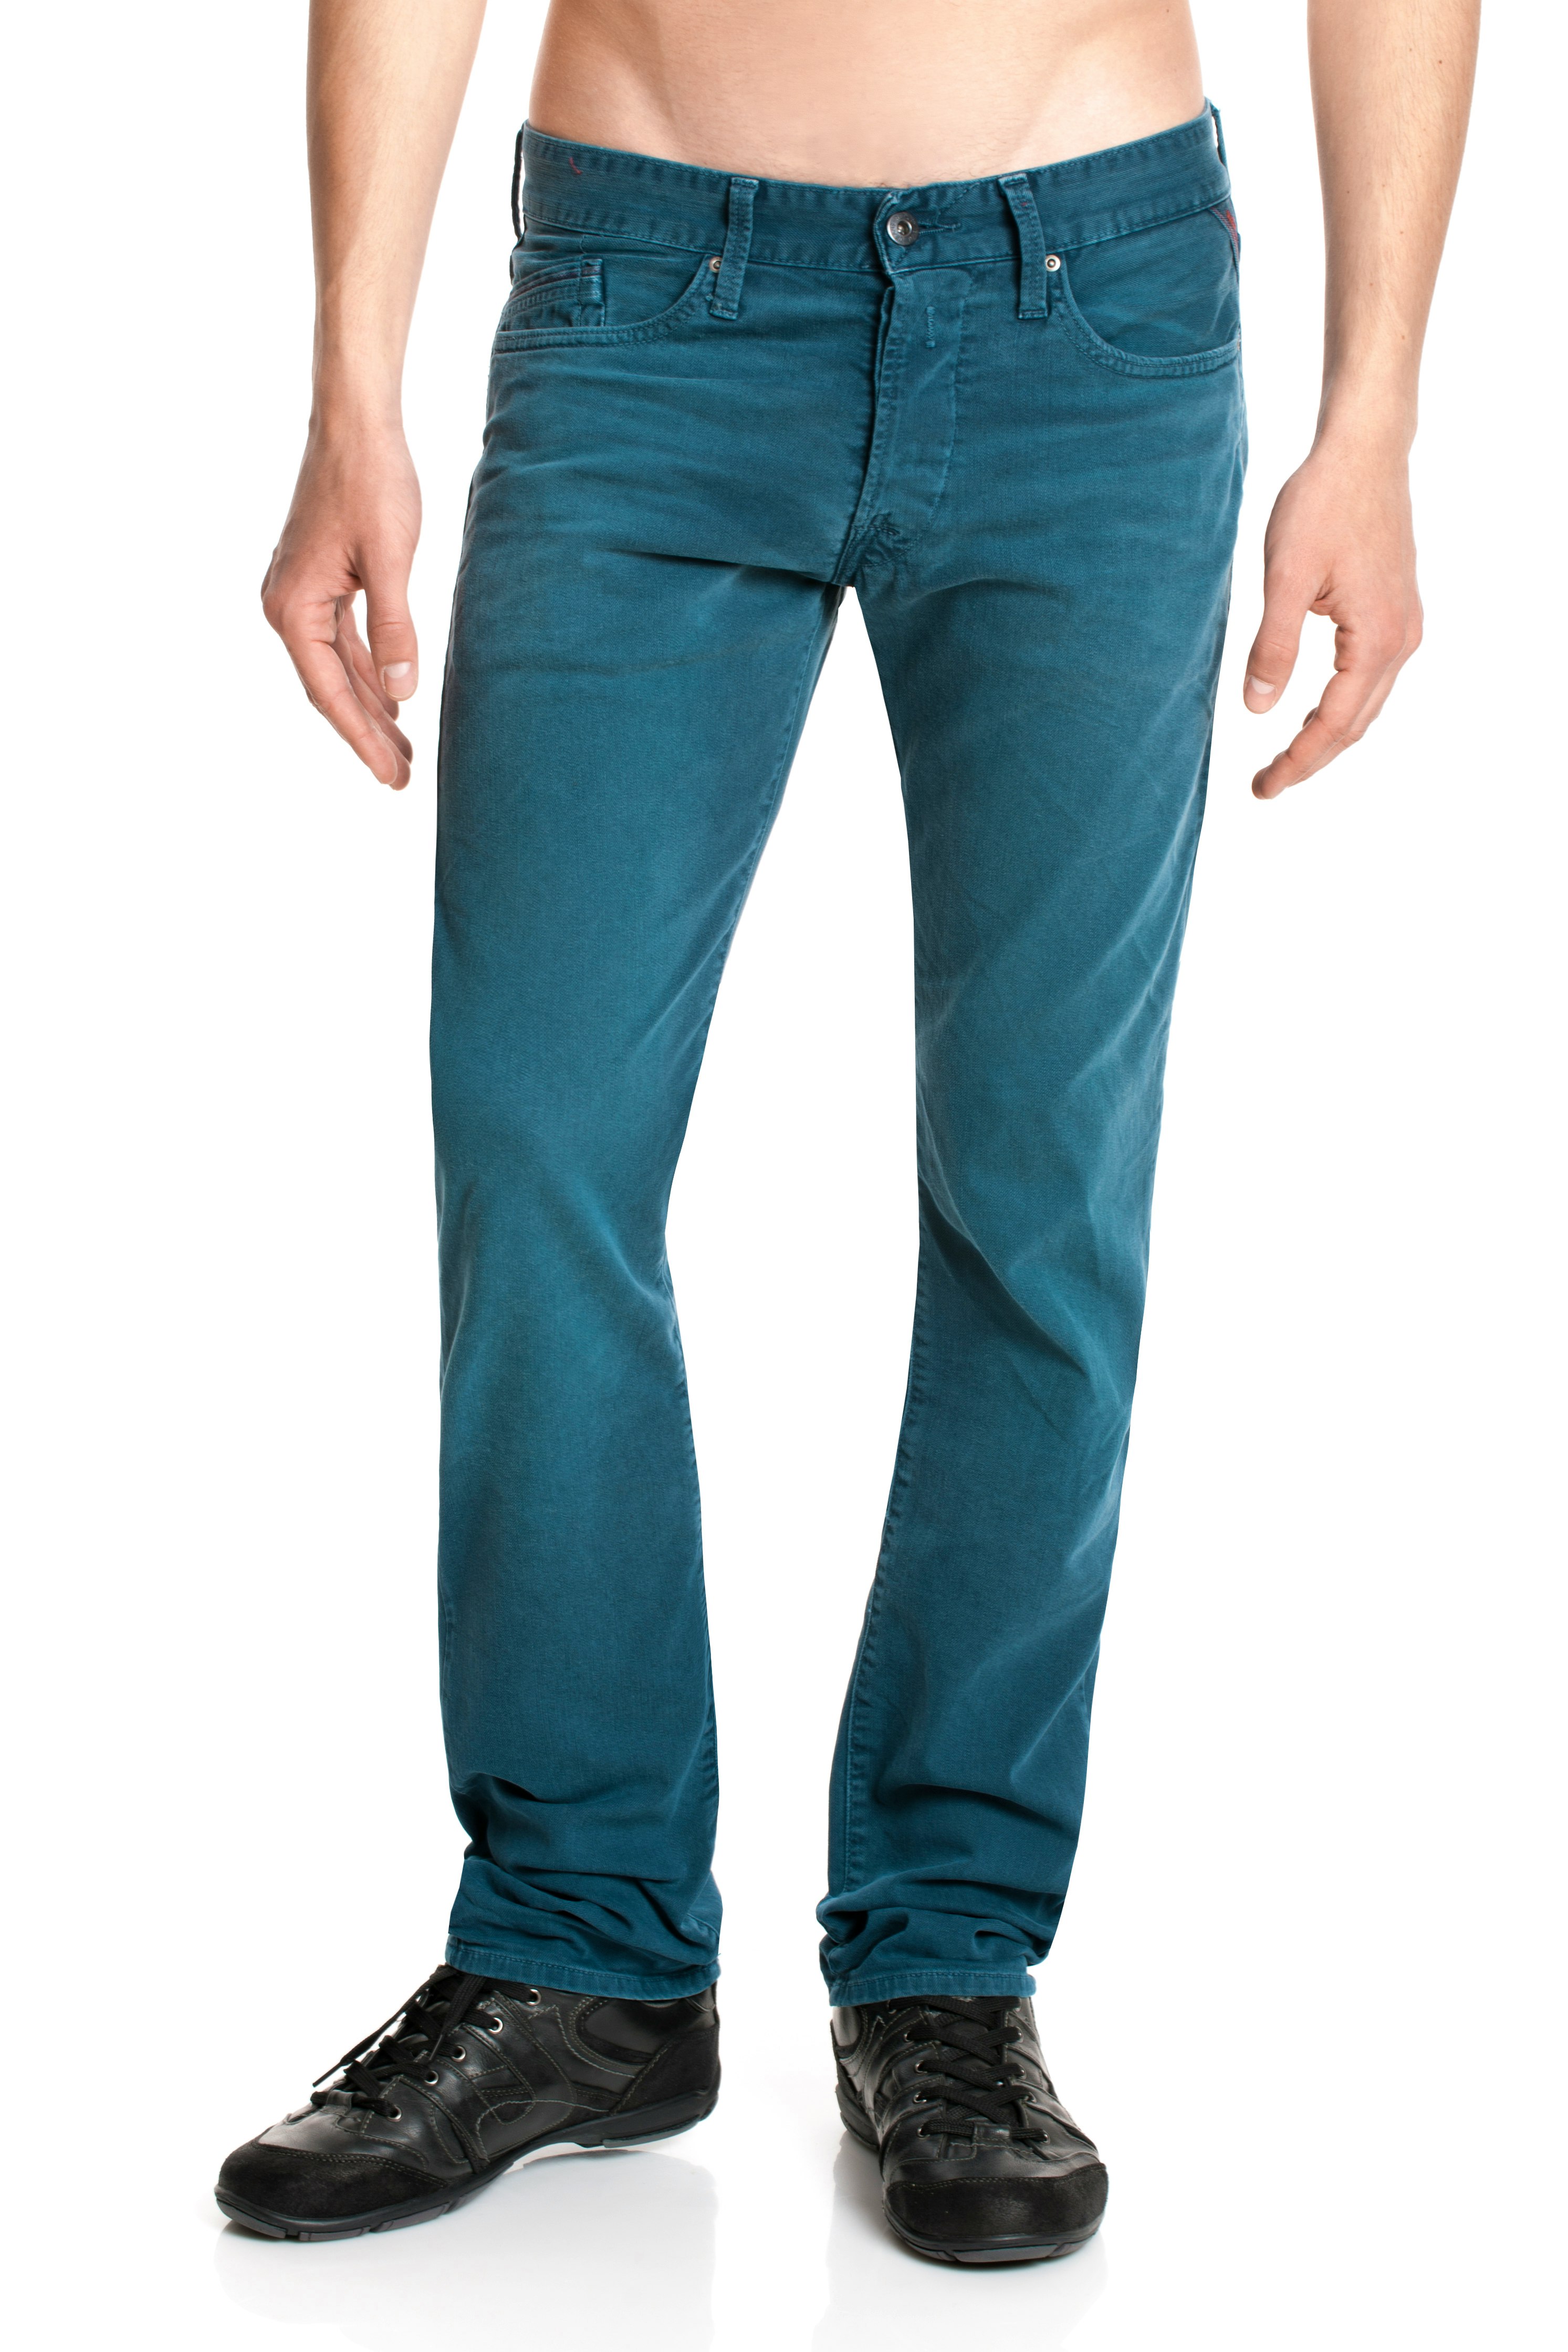 Replay jeans herren waitom - Die besten Replay jeans herren waitom ausführlich analysiert!